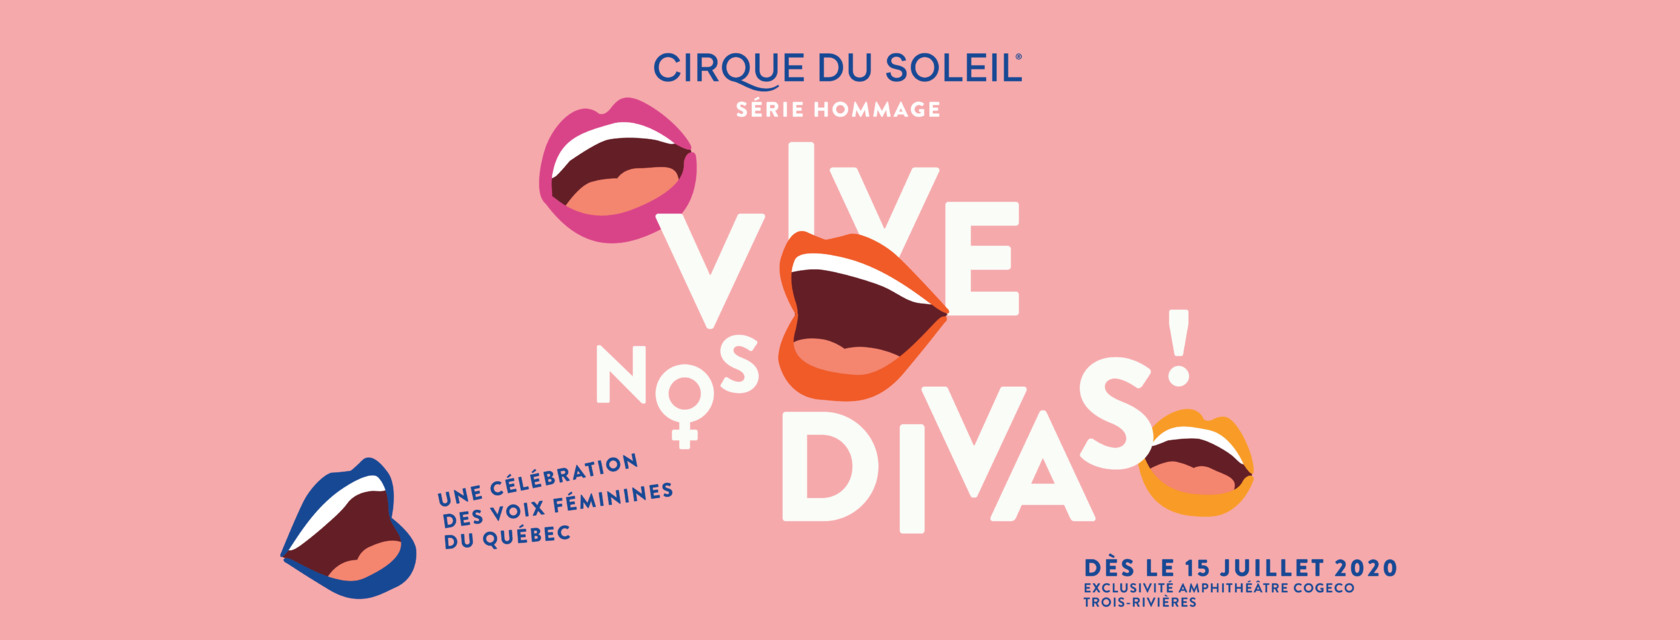 Le sixième opus de la Série hommage du Cirque du Soleil célébrera les divas québécoises